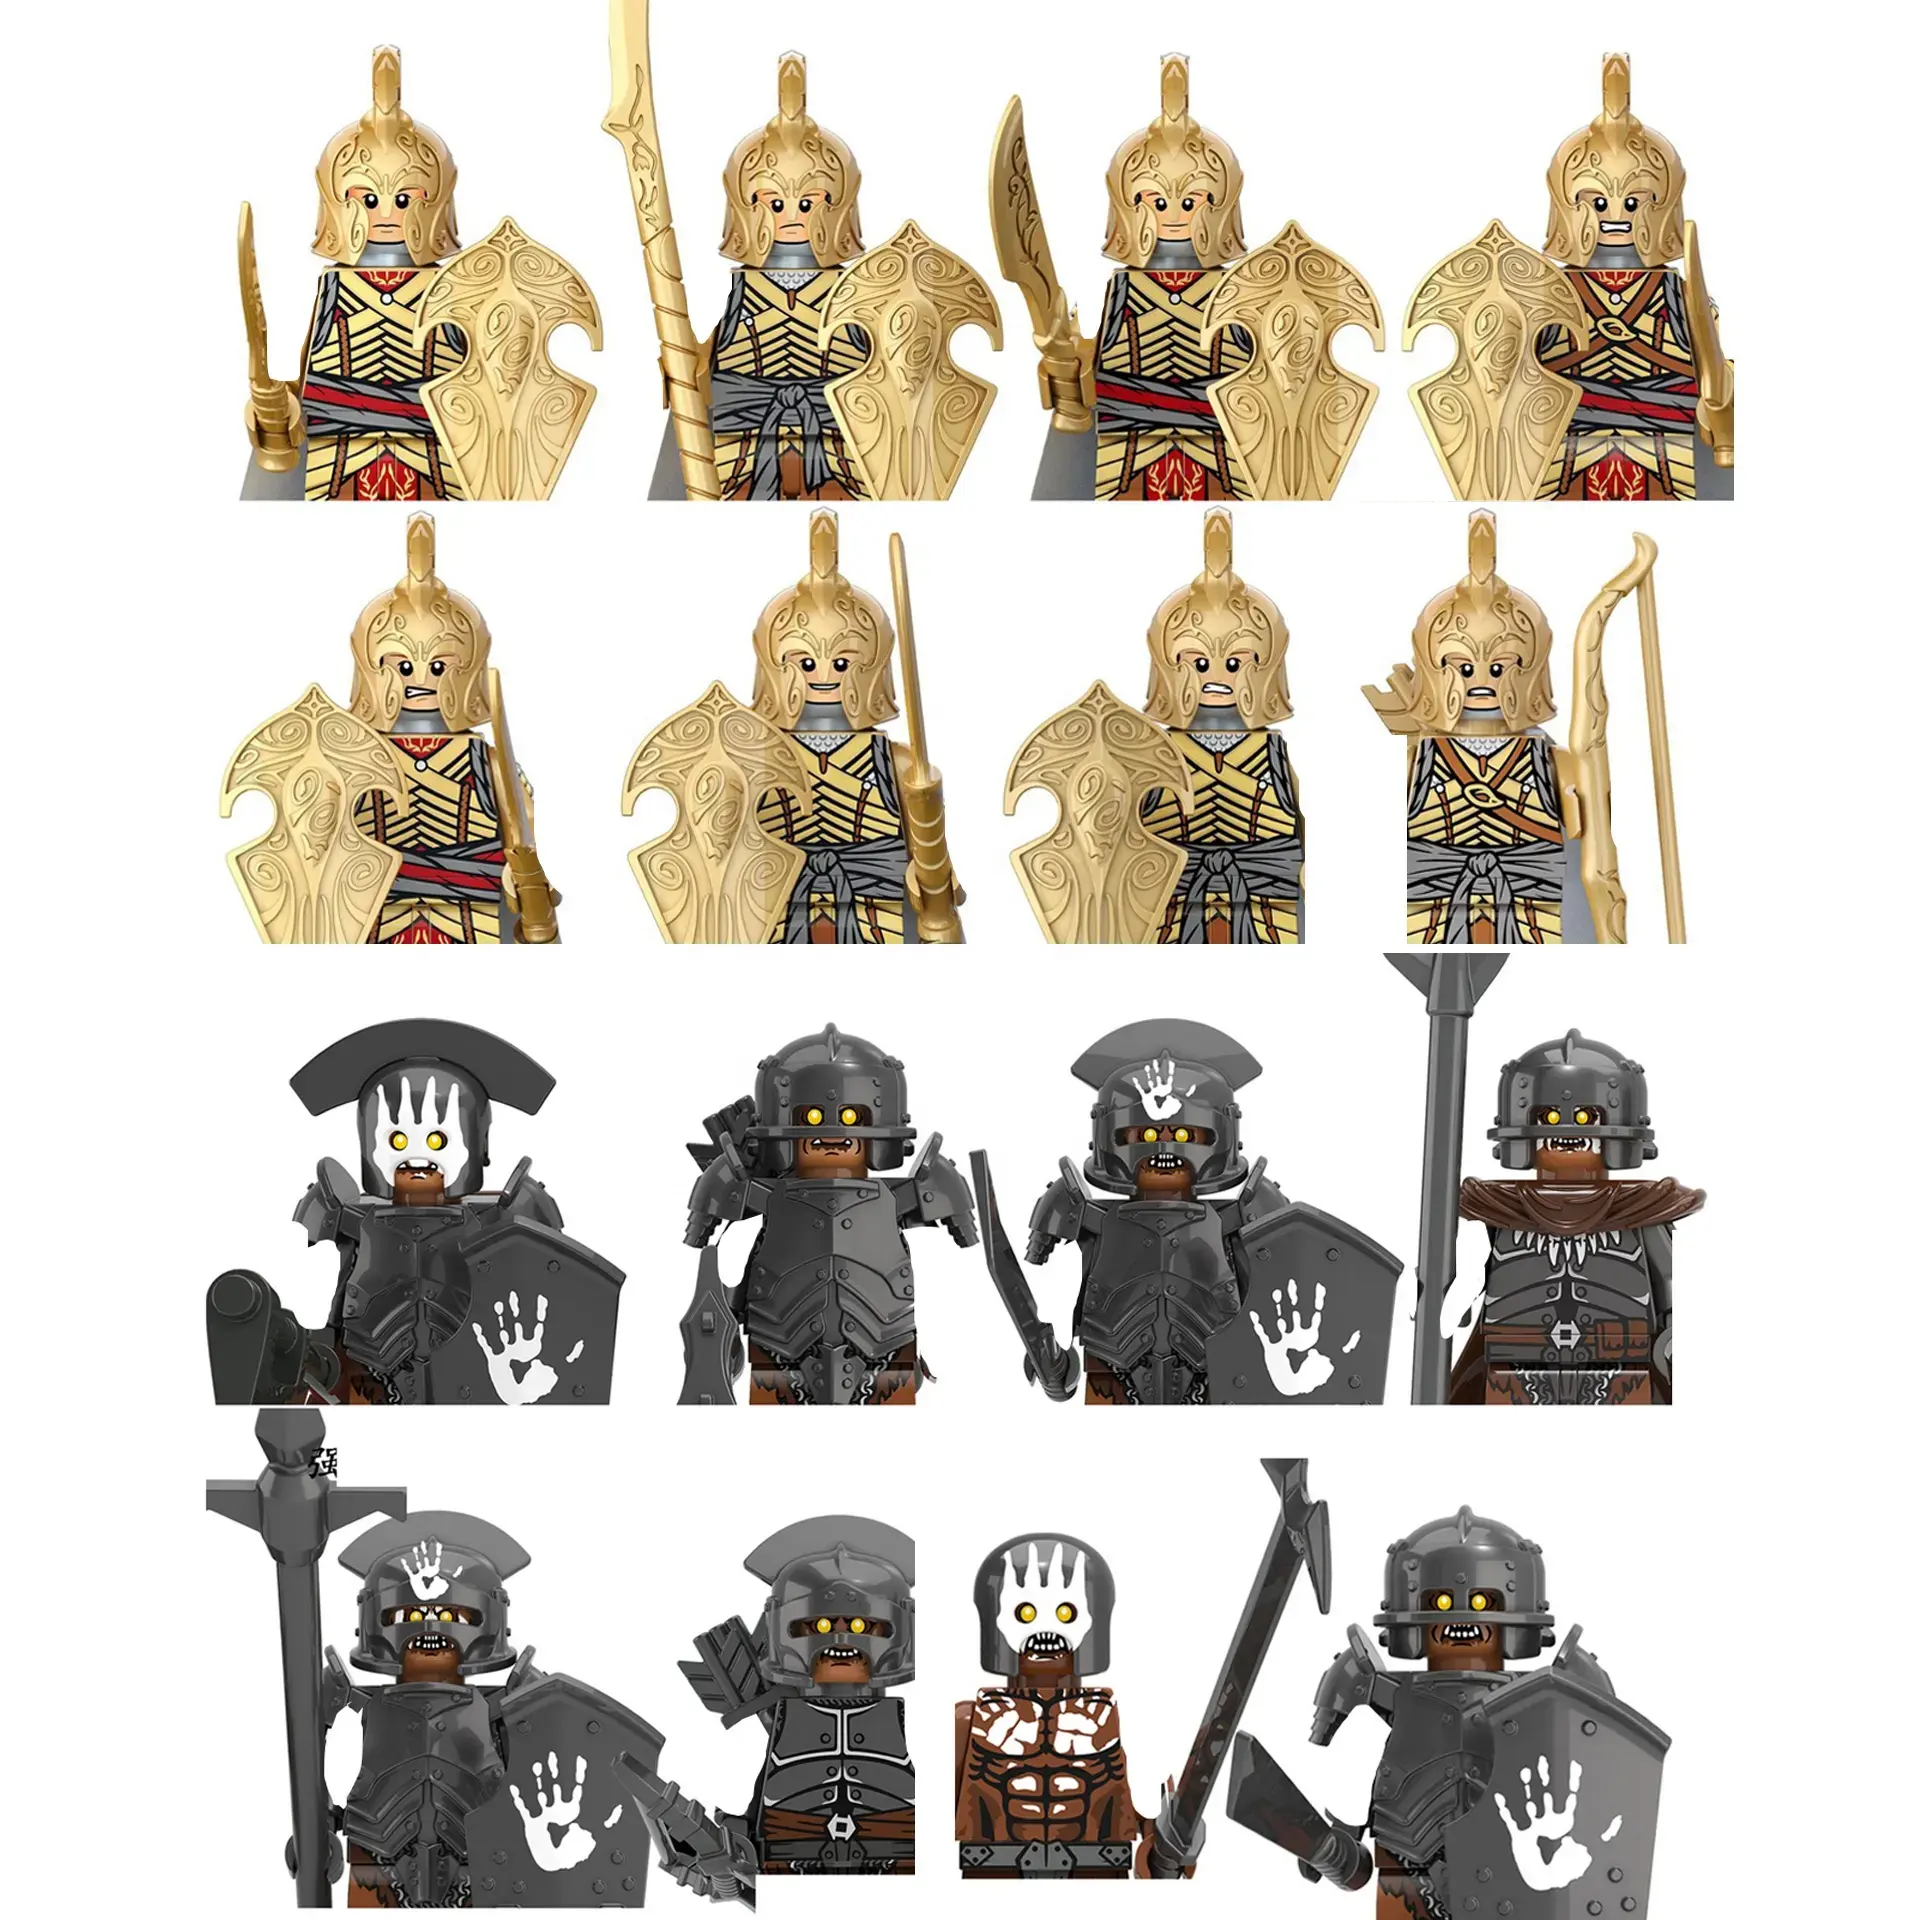 Figuras de soldados de caballeros medievales militares Elven Warrior Uruk Hai Mini bloques de construcción Knight Noldo juguetes educativos para niños